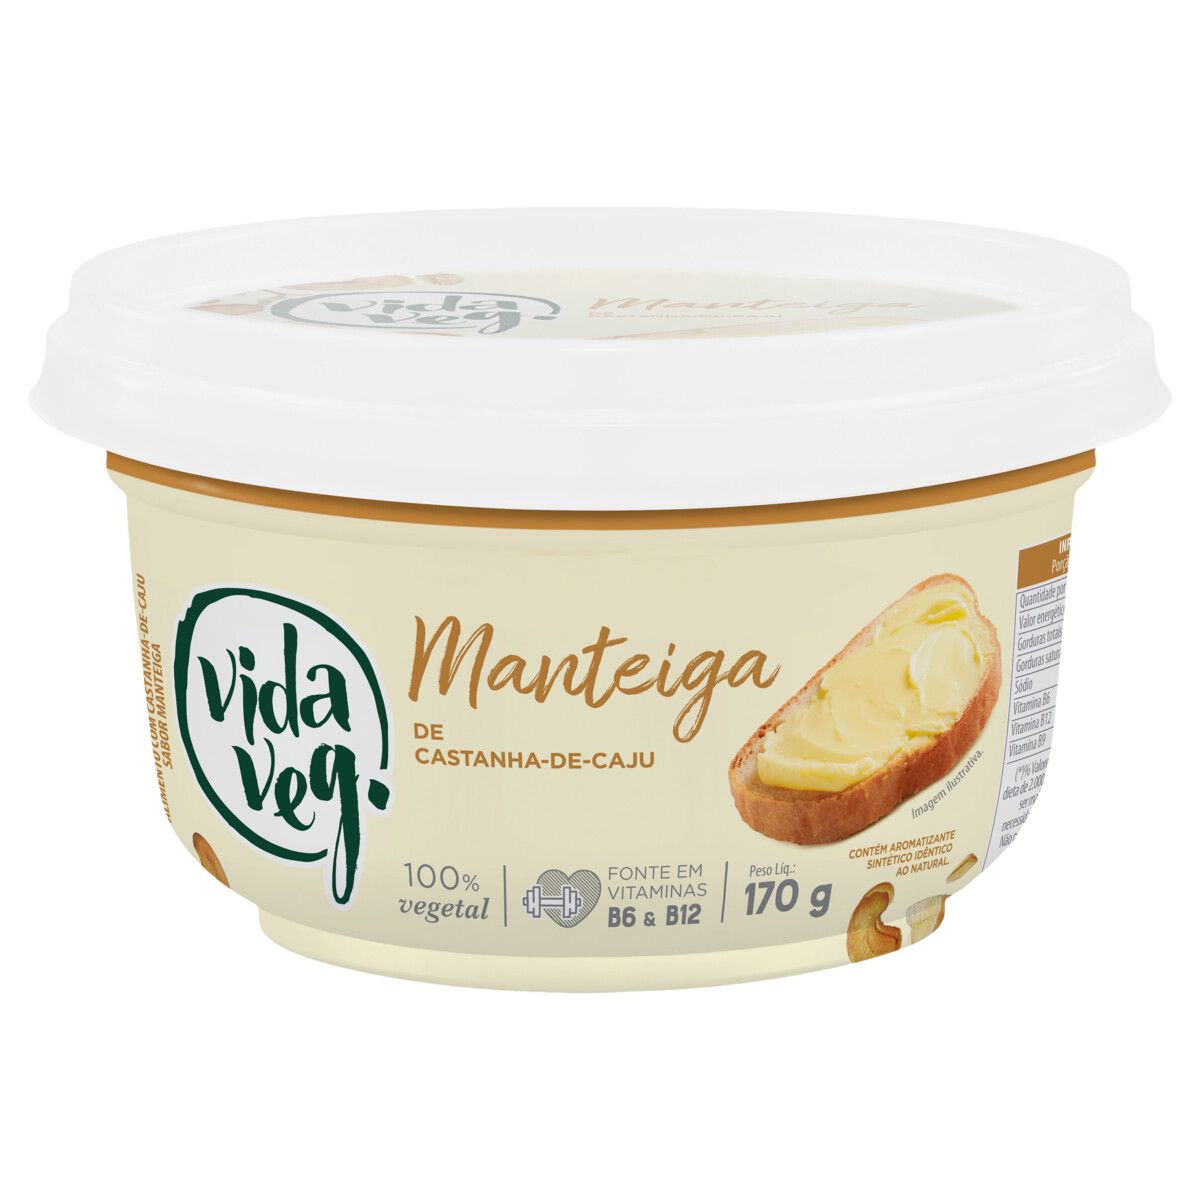 Manteiga com Castanha-de-Caju e Sal do Himalaia Zero Lactose Vida Veg Pote 170g